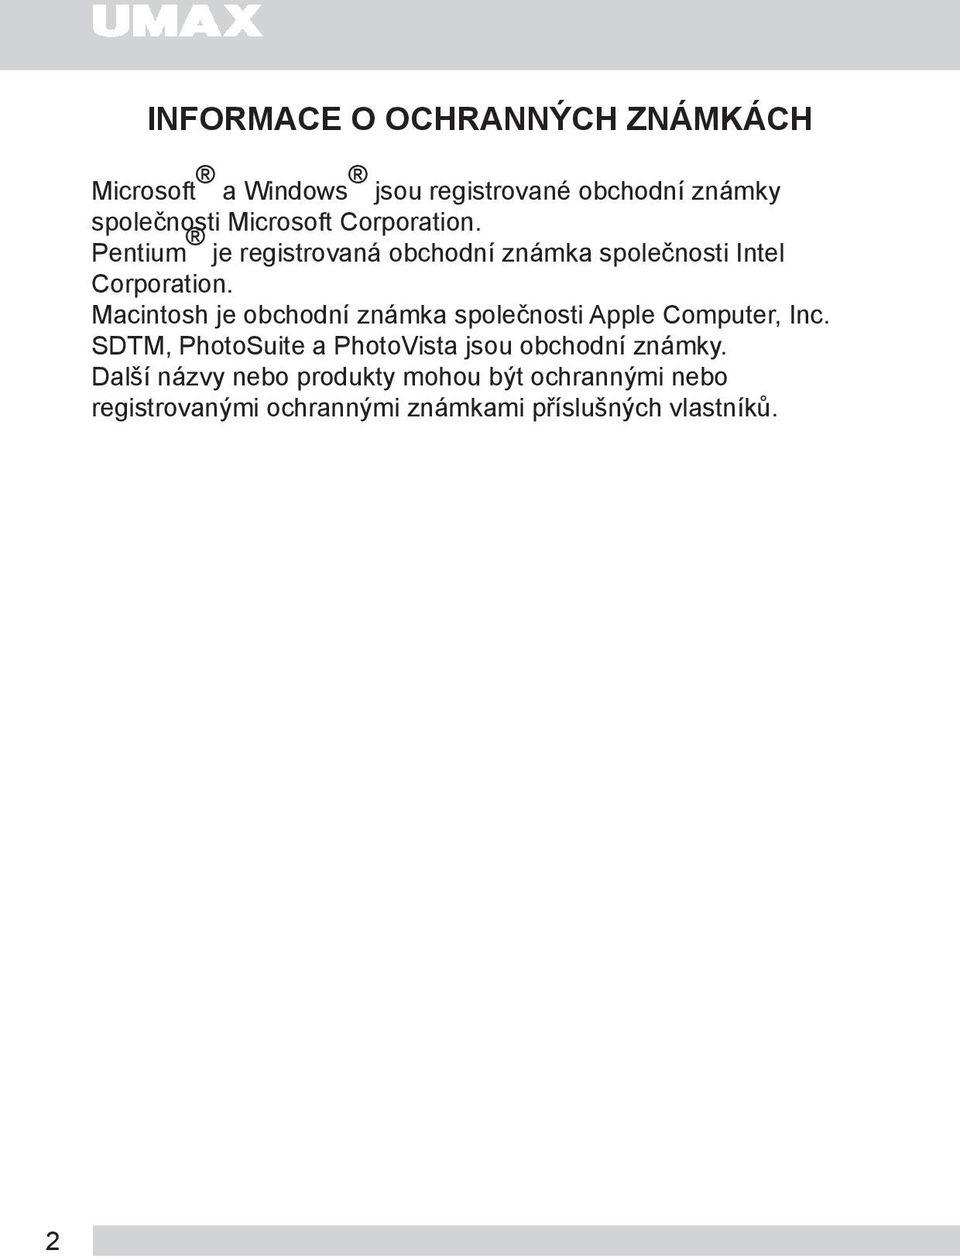 Macintosh je obchodní známka společnosti Apple Computer, Inc.